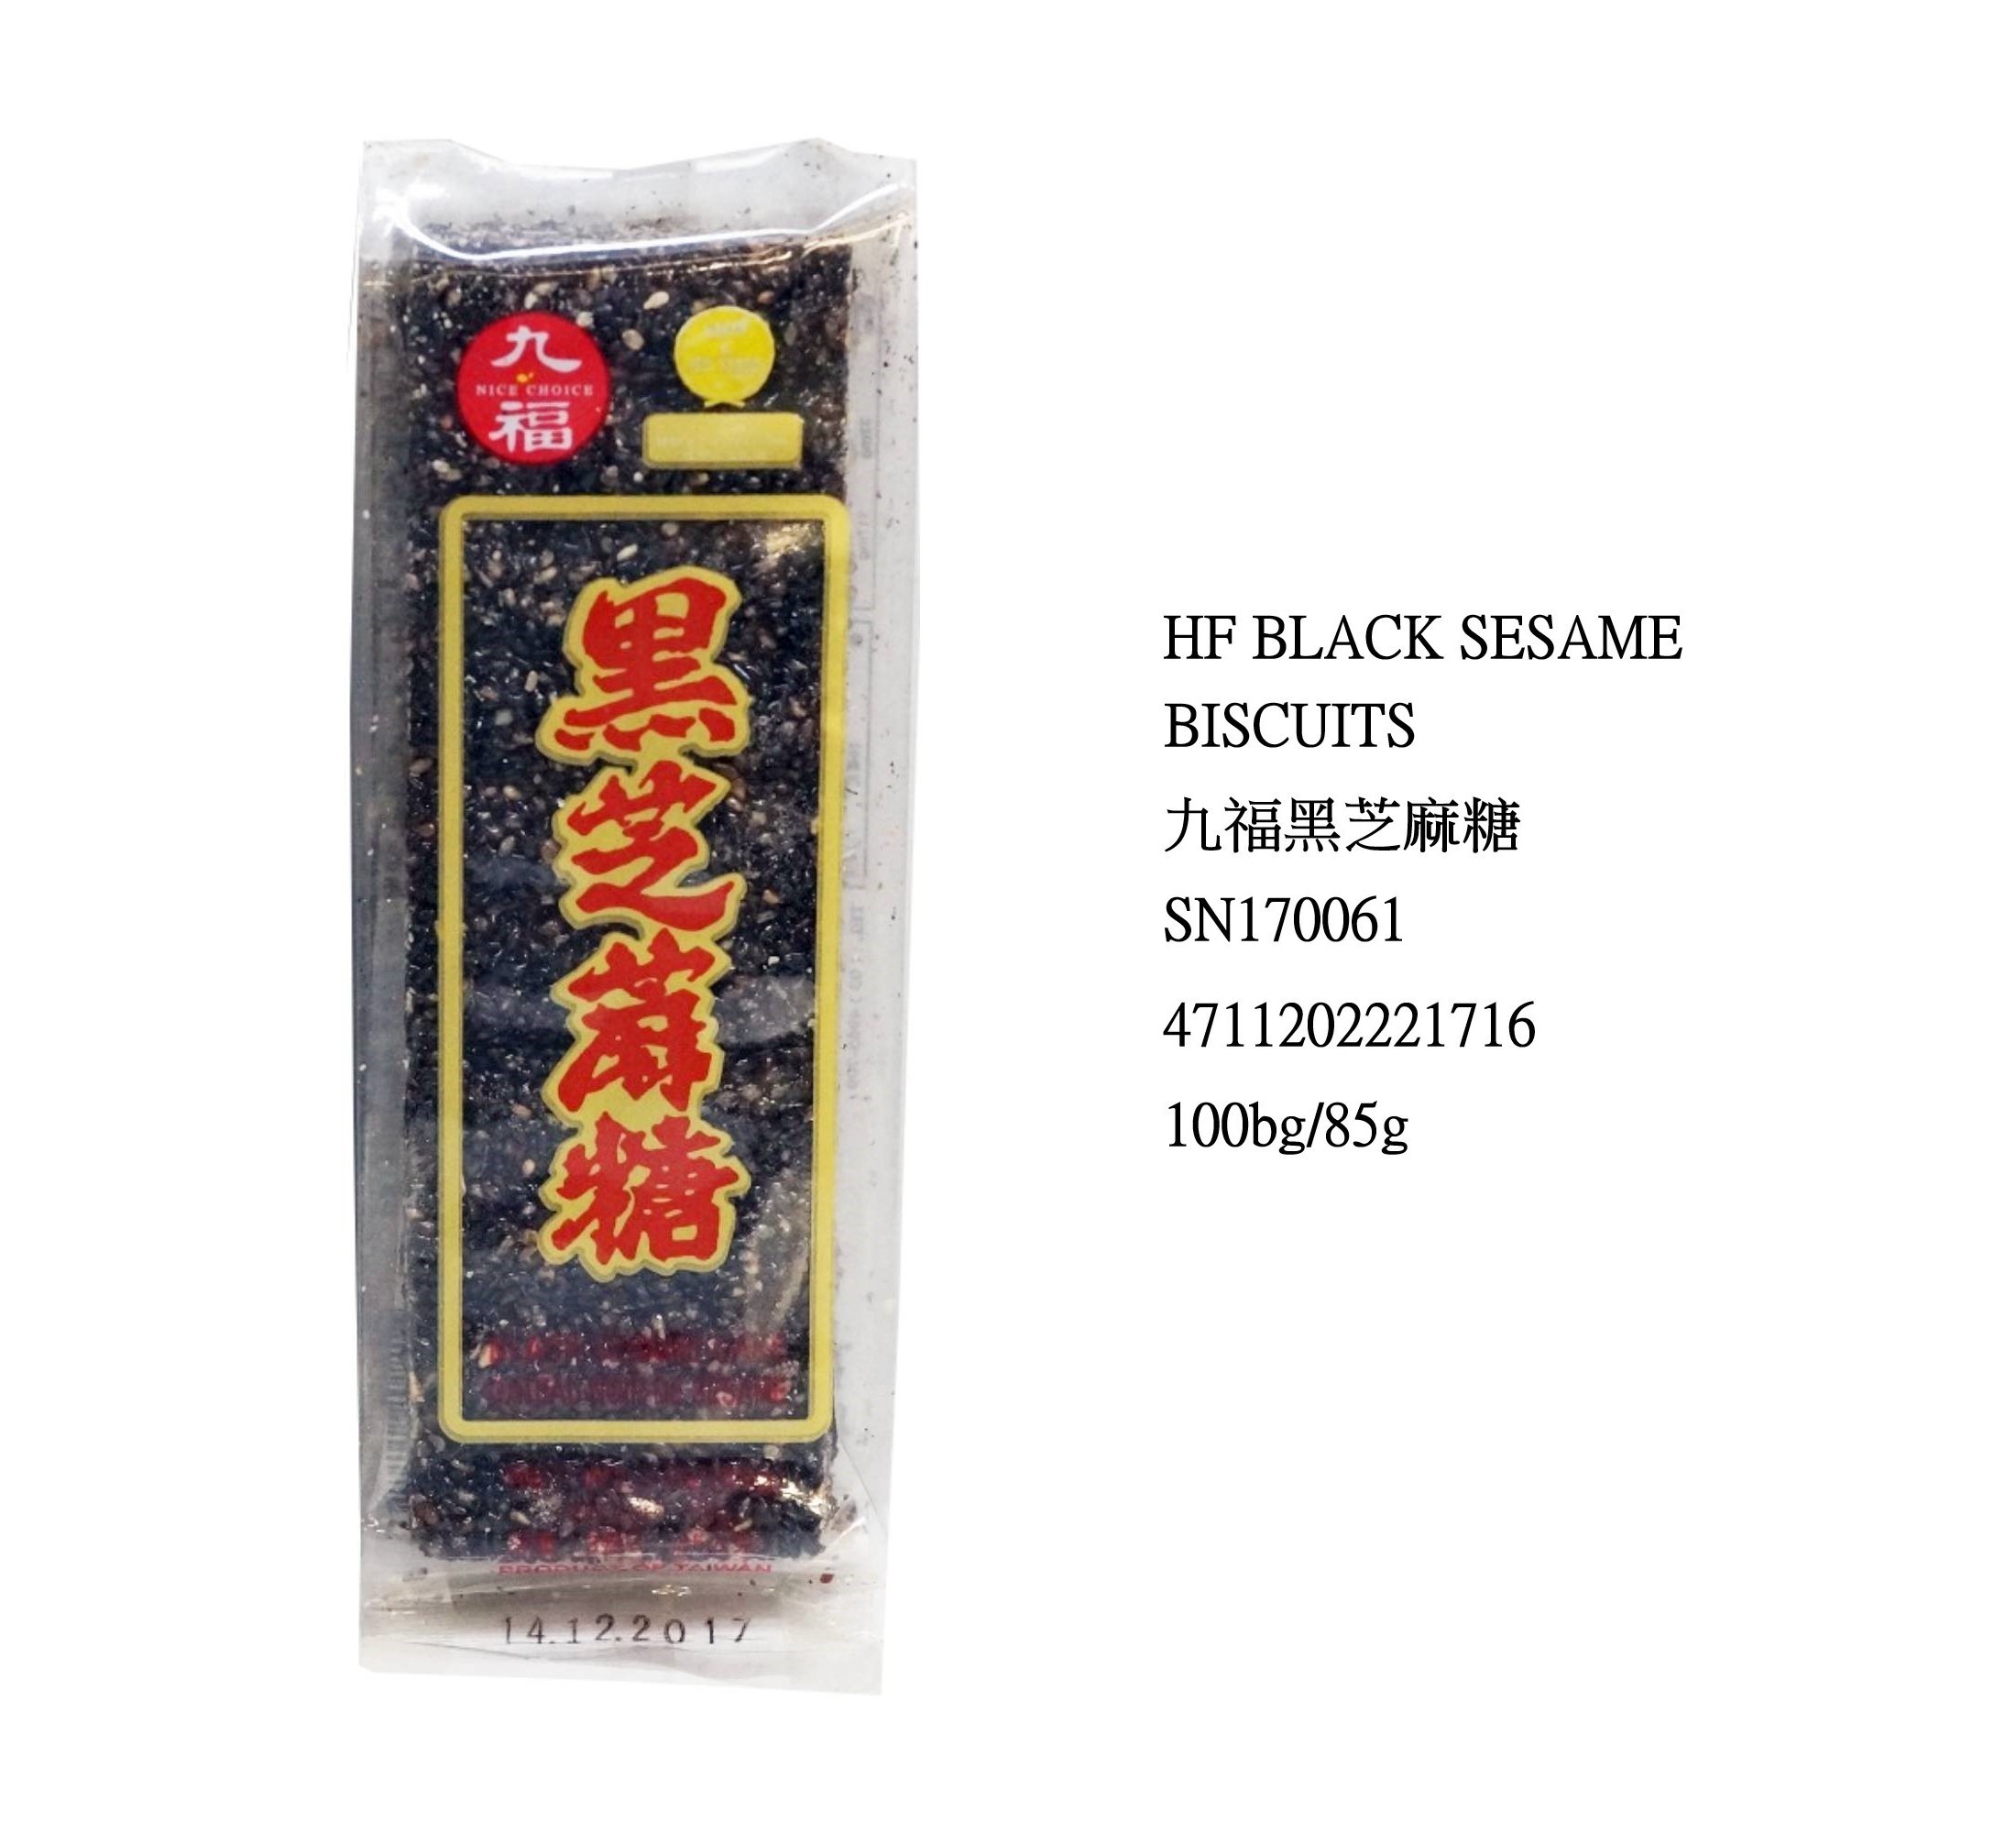 NICE CHOICE BLACK SESAME CAKE SN170061